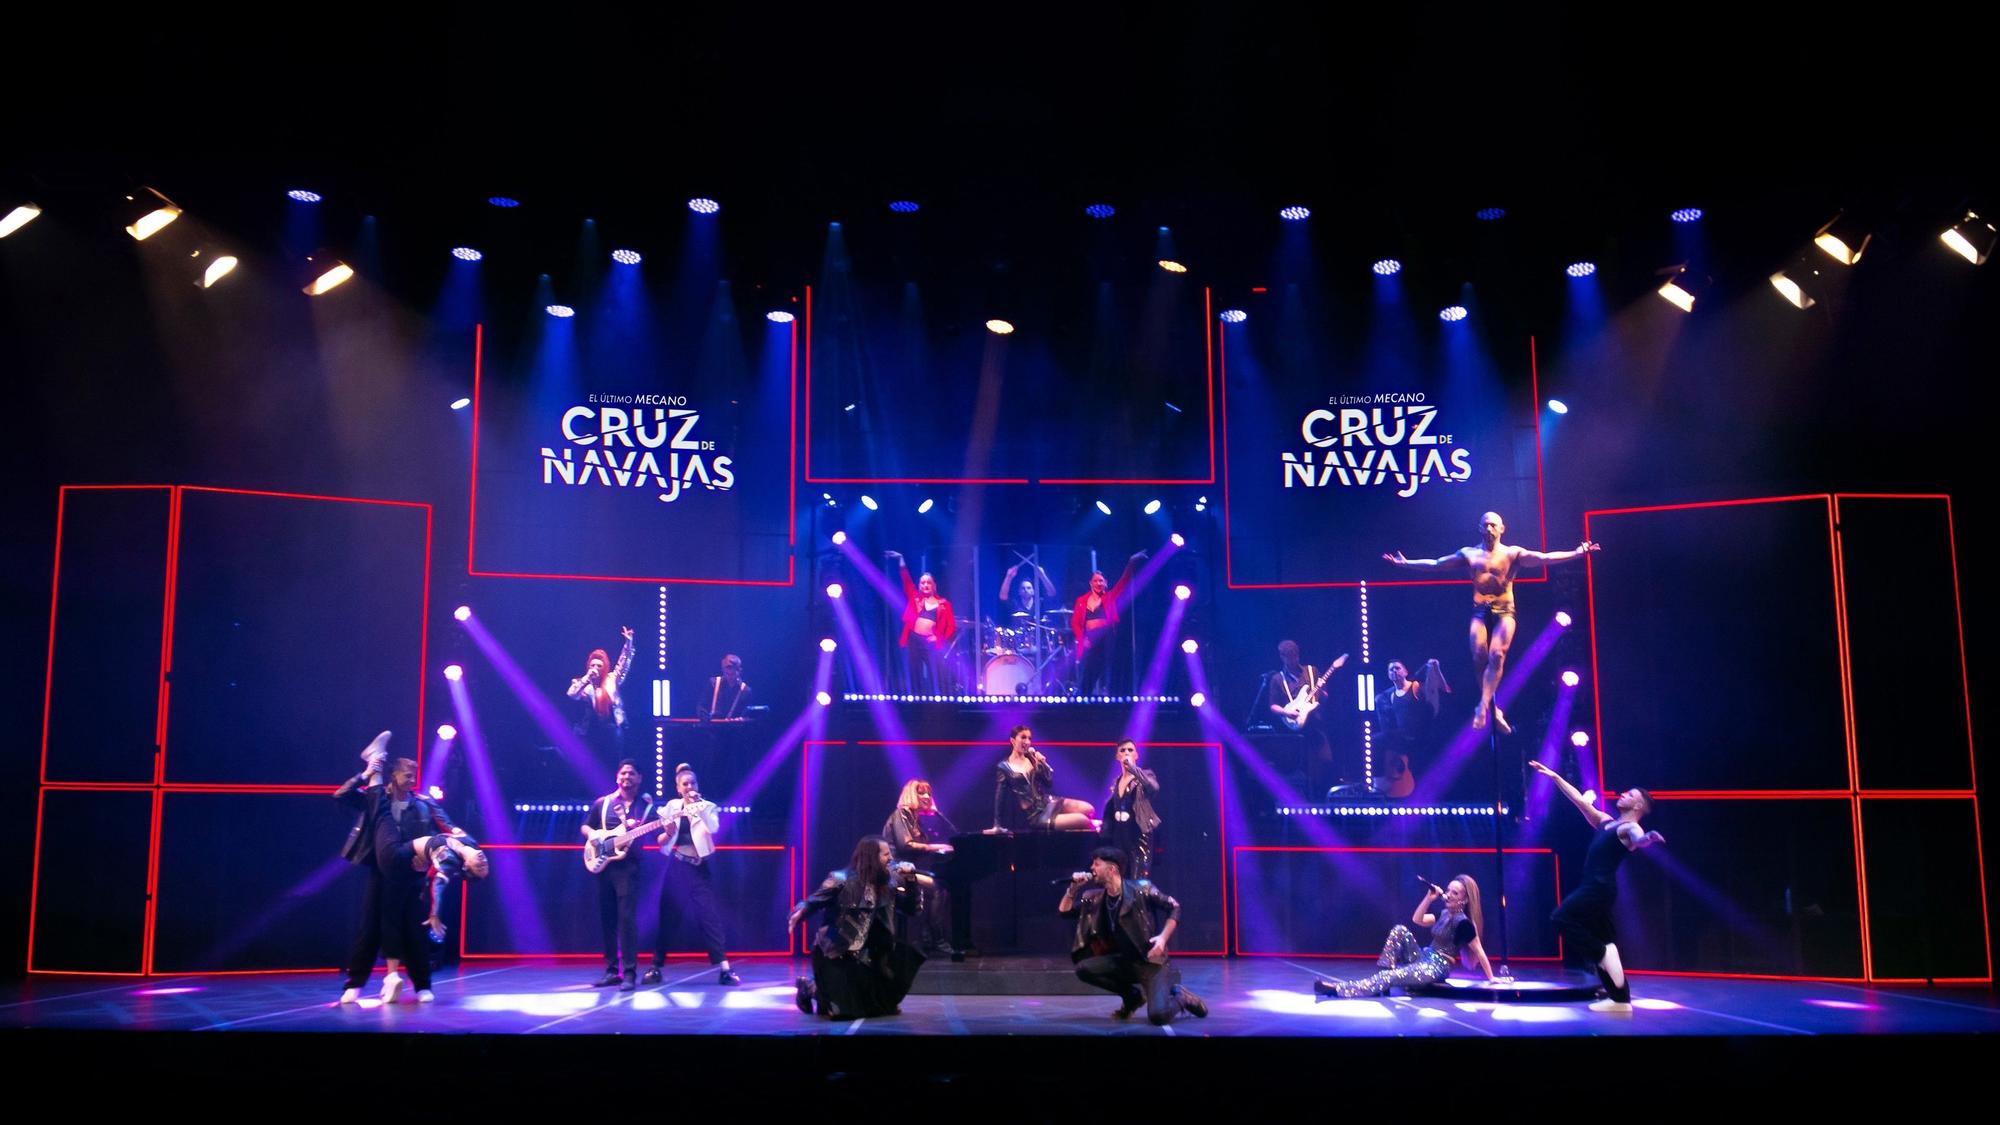 En imágenes: Musical "Cruz de navajas" en el Palacio Valdés de Avilés